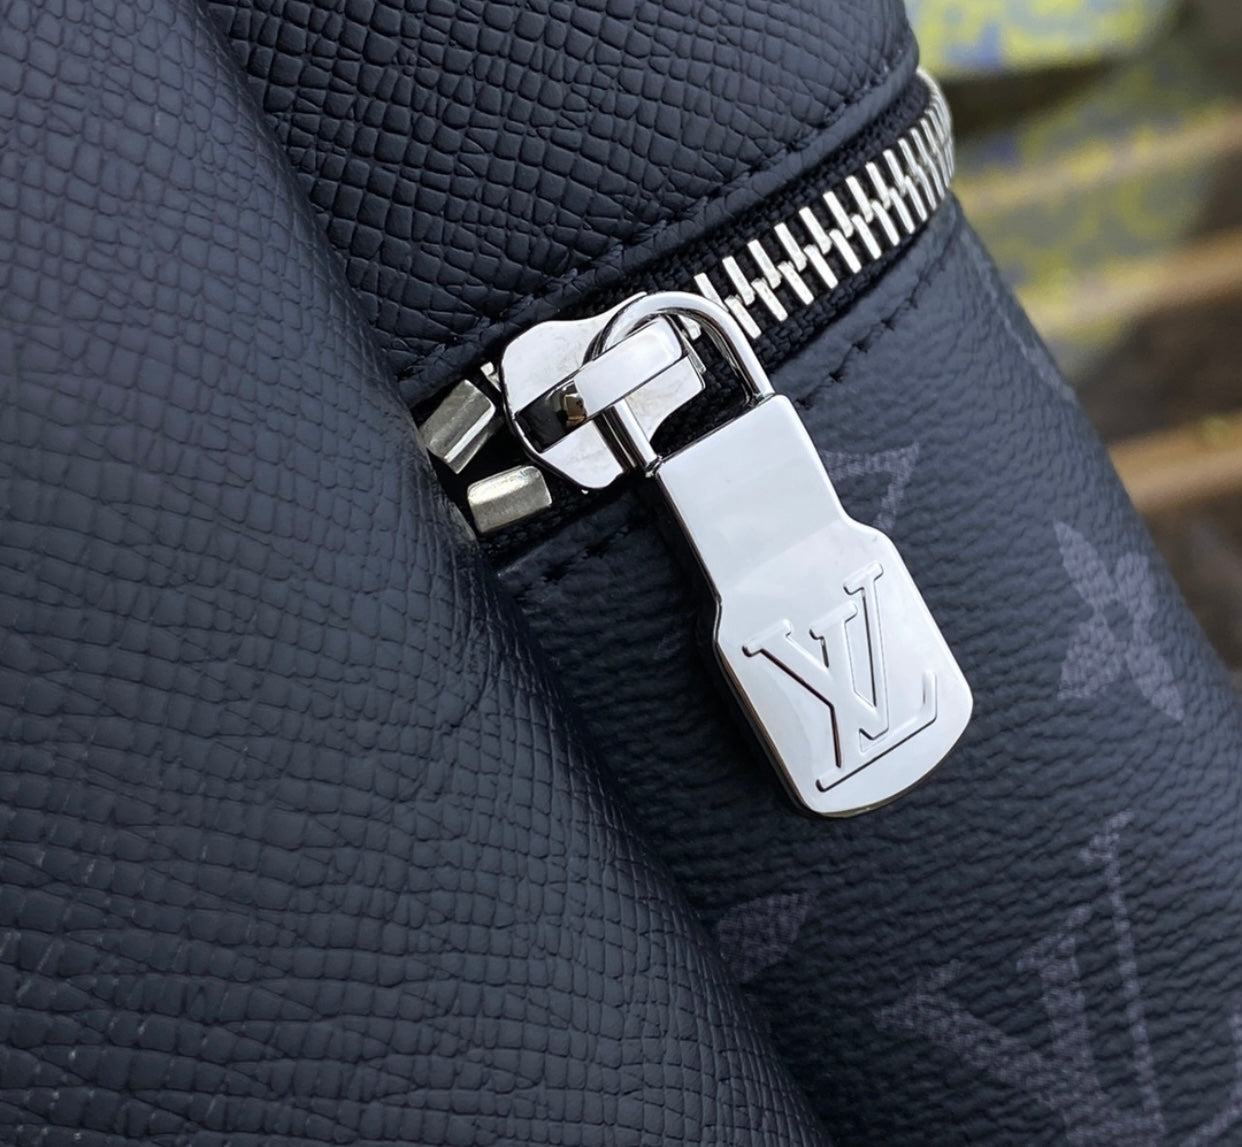  Louis Vuitton M30258 Alex Backpack Black, NOIR